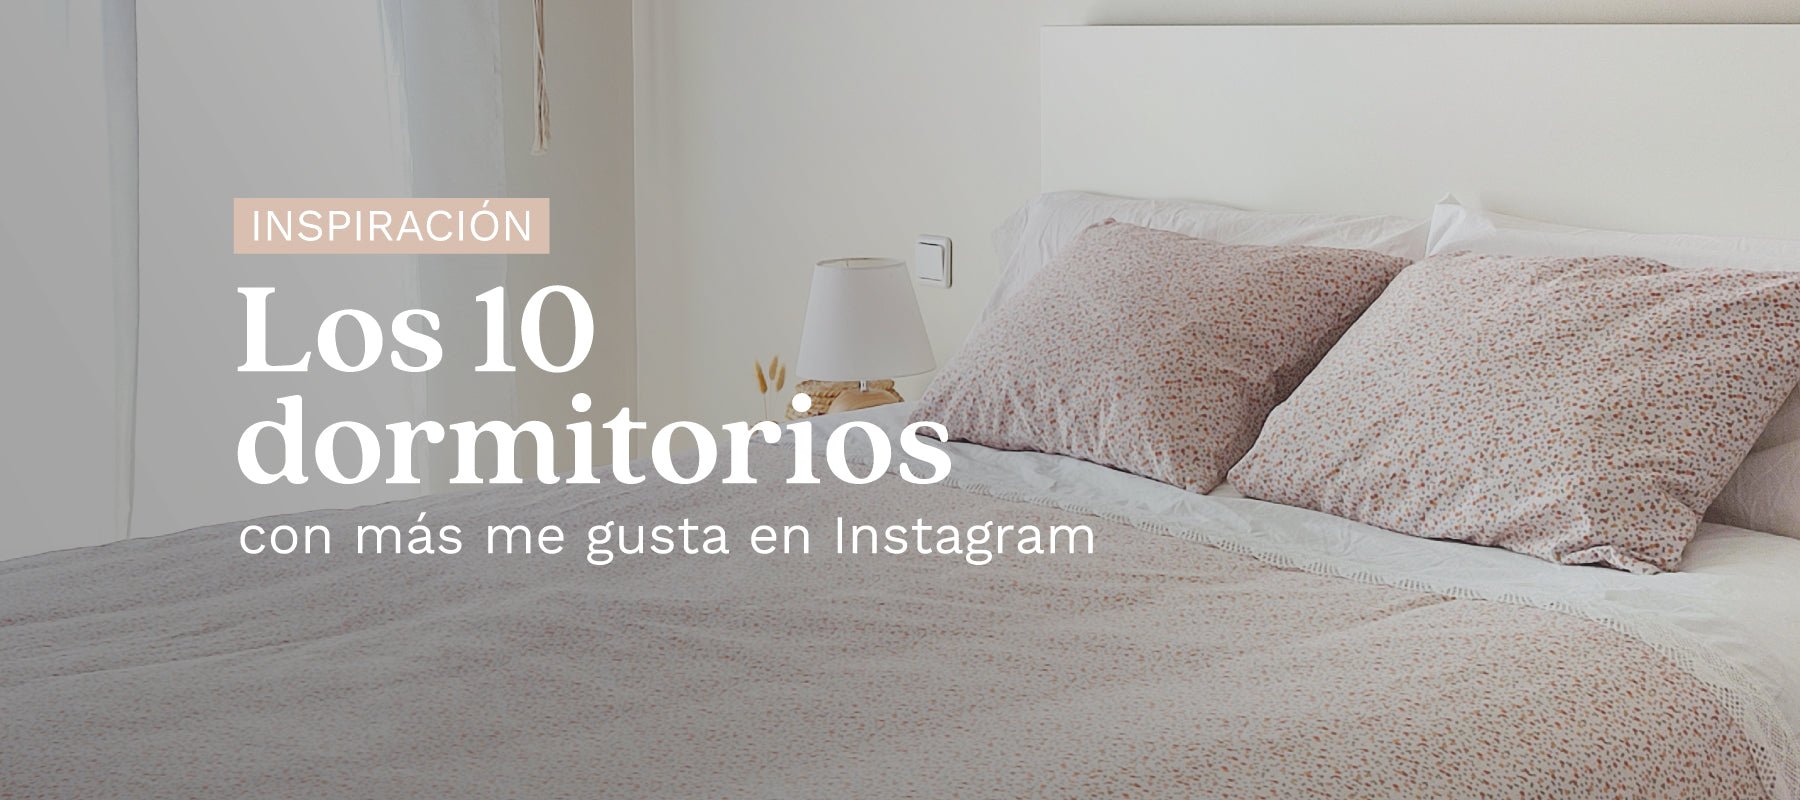 Los 10 dormitorios con más me gustas de Instagram - sokios